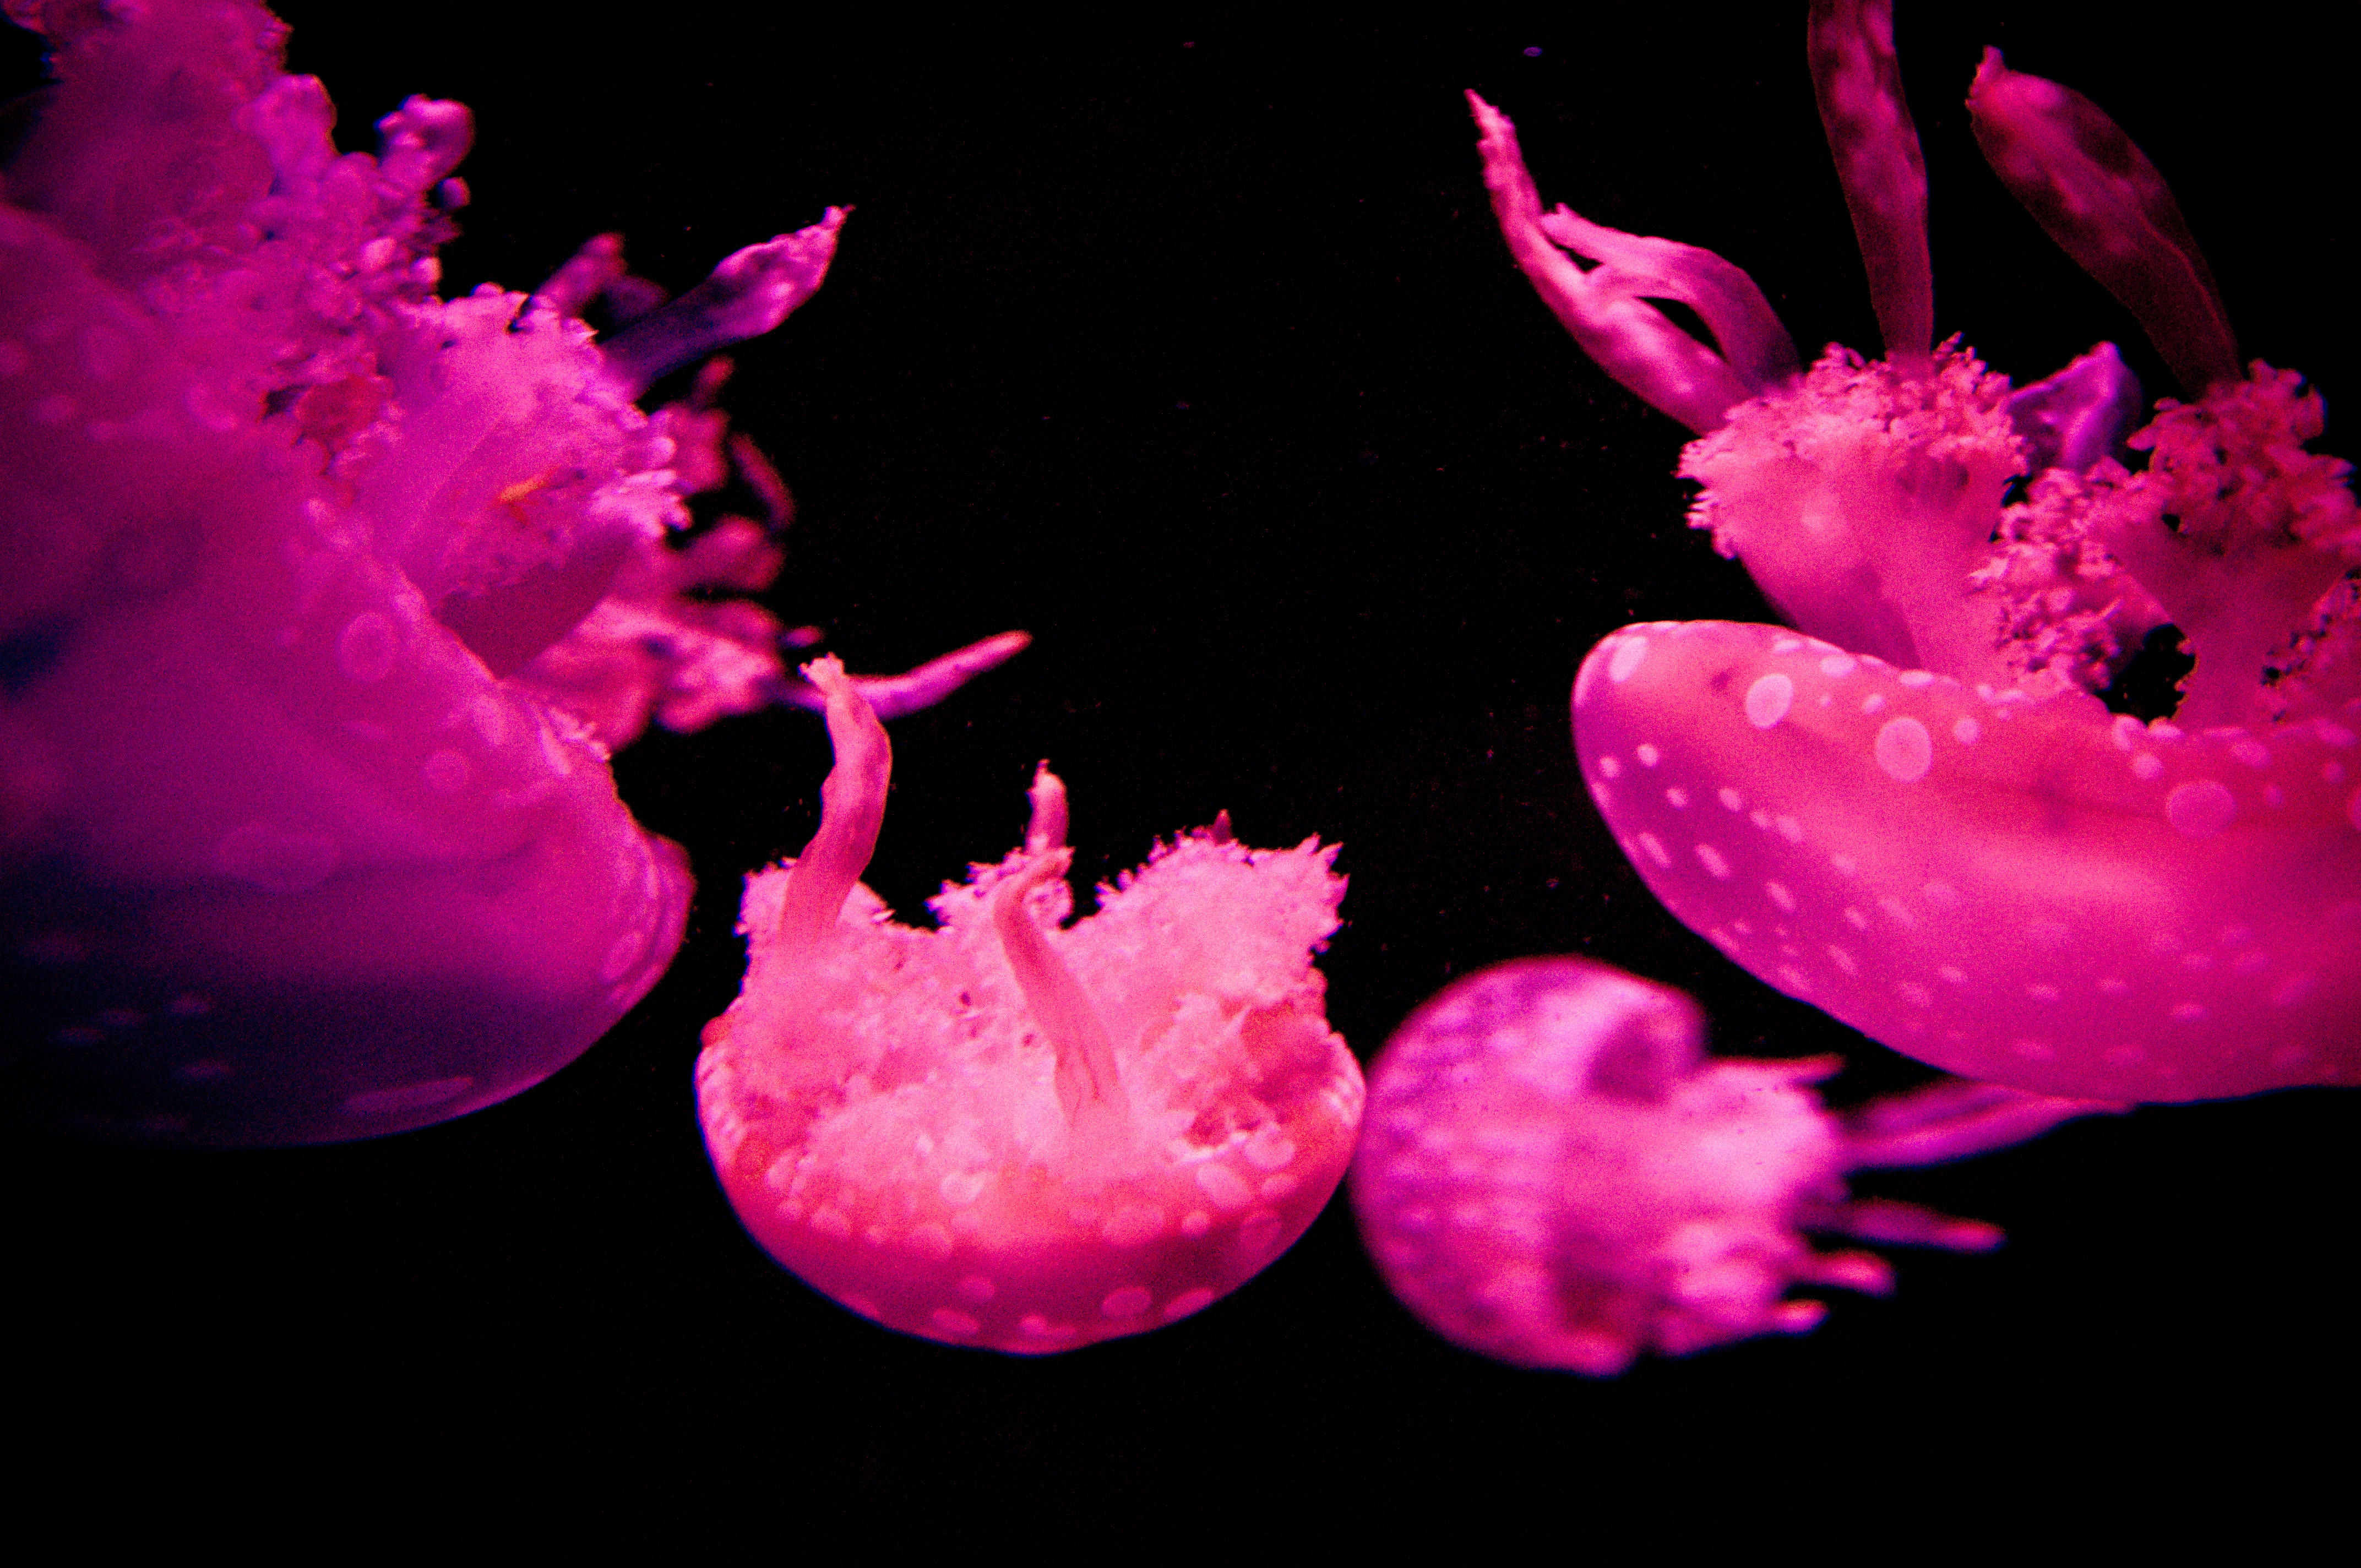 Jellyfish photo